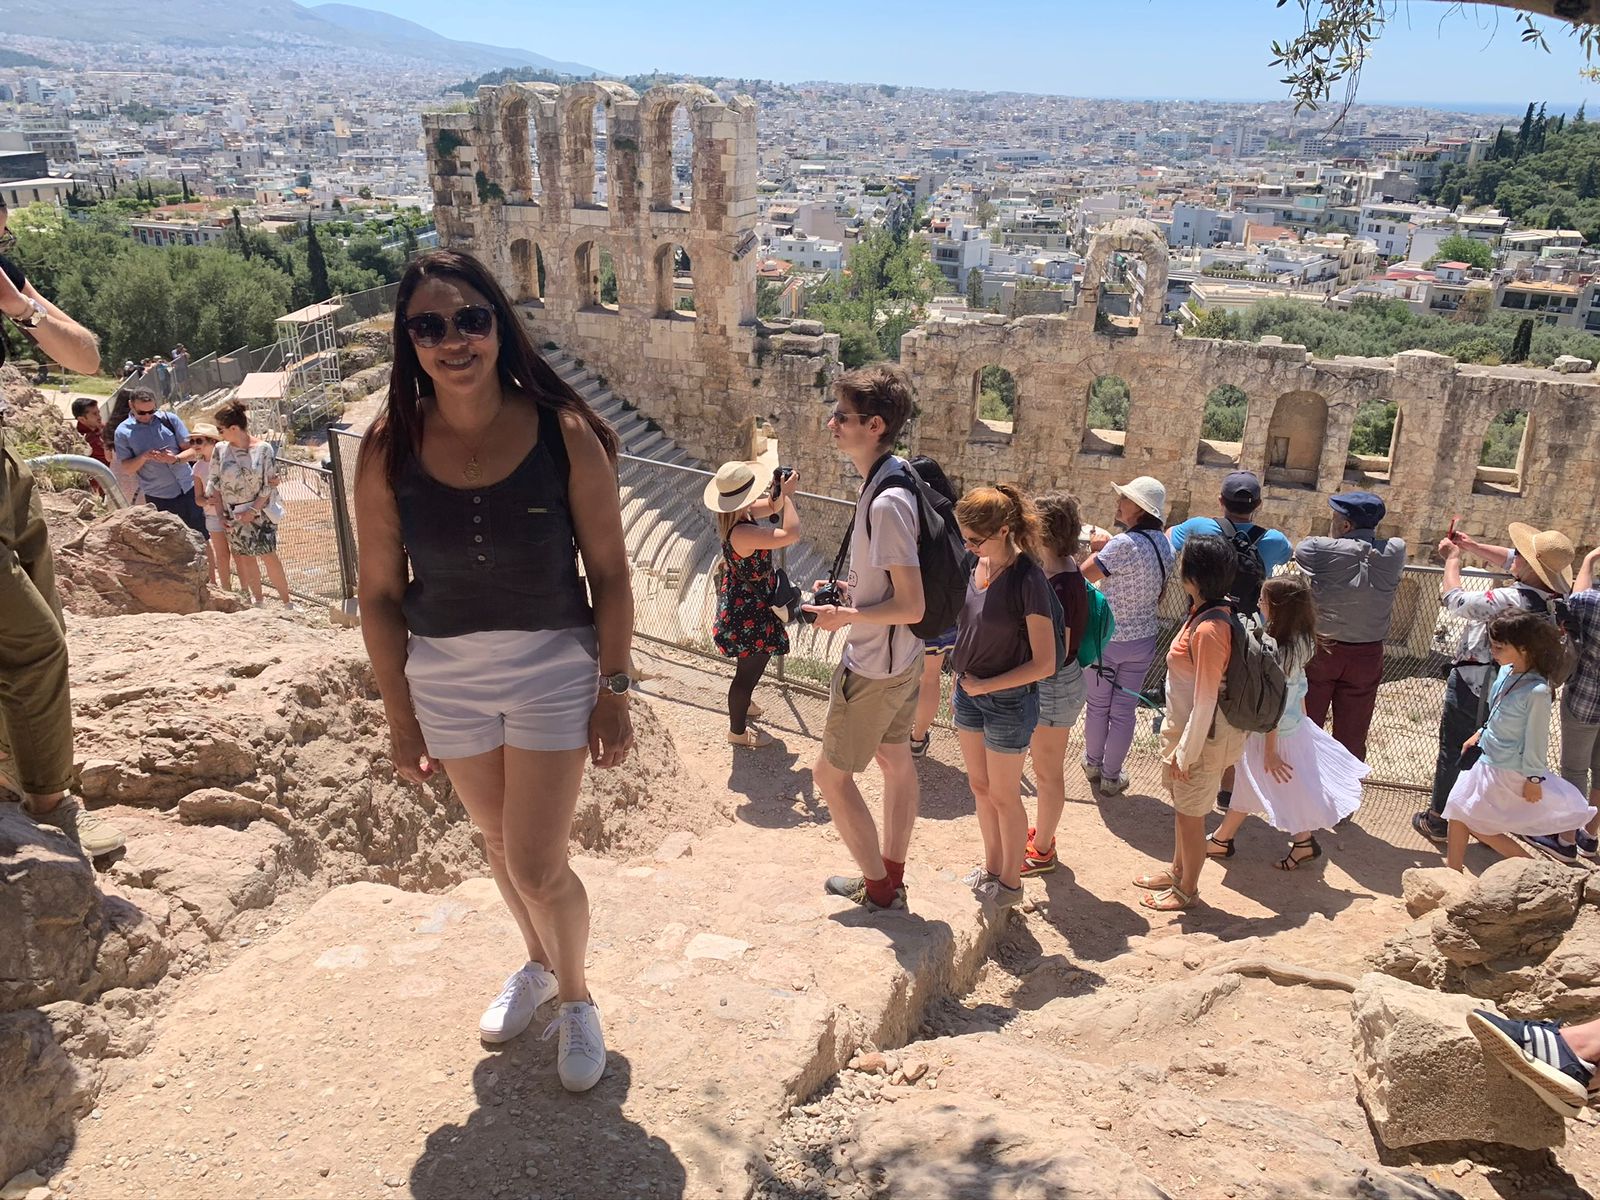 mulher posando para foto numa viagem a grécia, nos fundos as ruinas gregas. Clientes da Suez Turismo